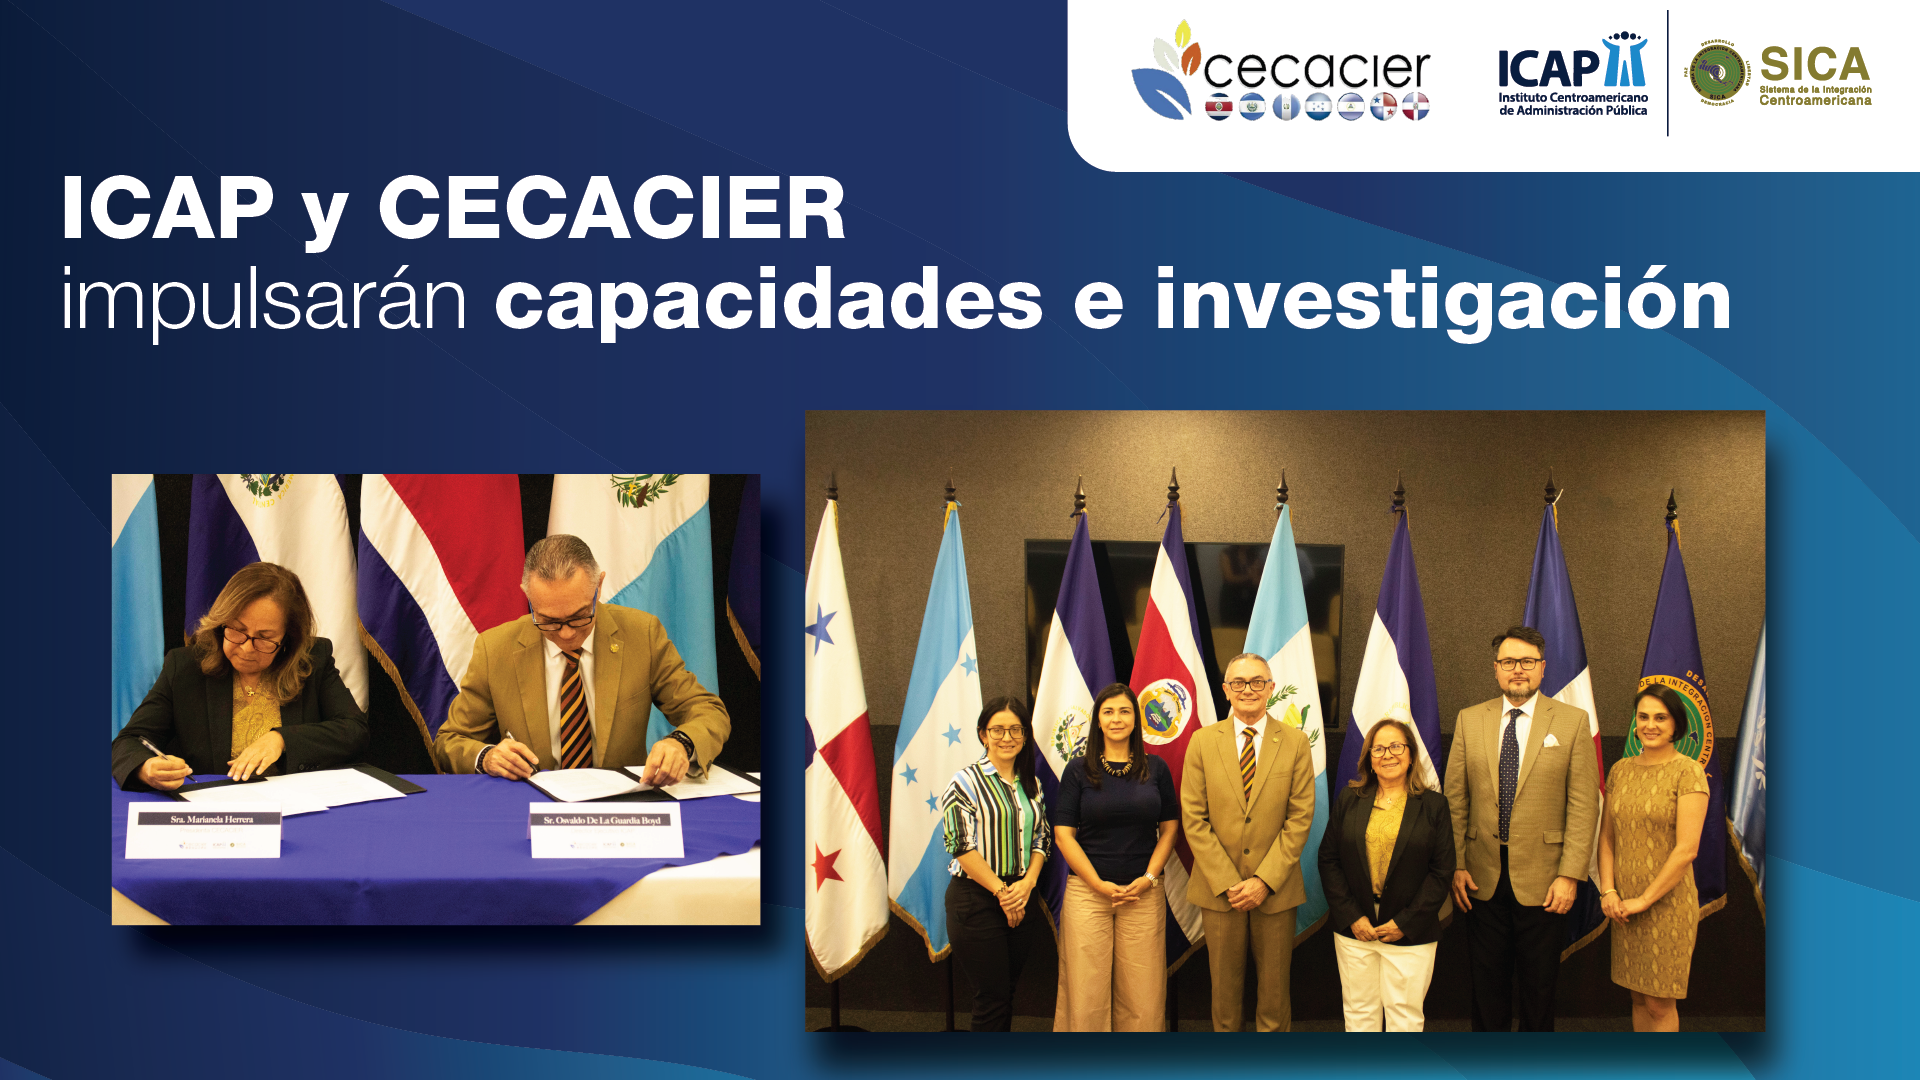 ICAP y CECACIER impulsarán capacidades en regulación y política públicas en el sector energía